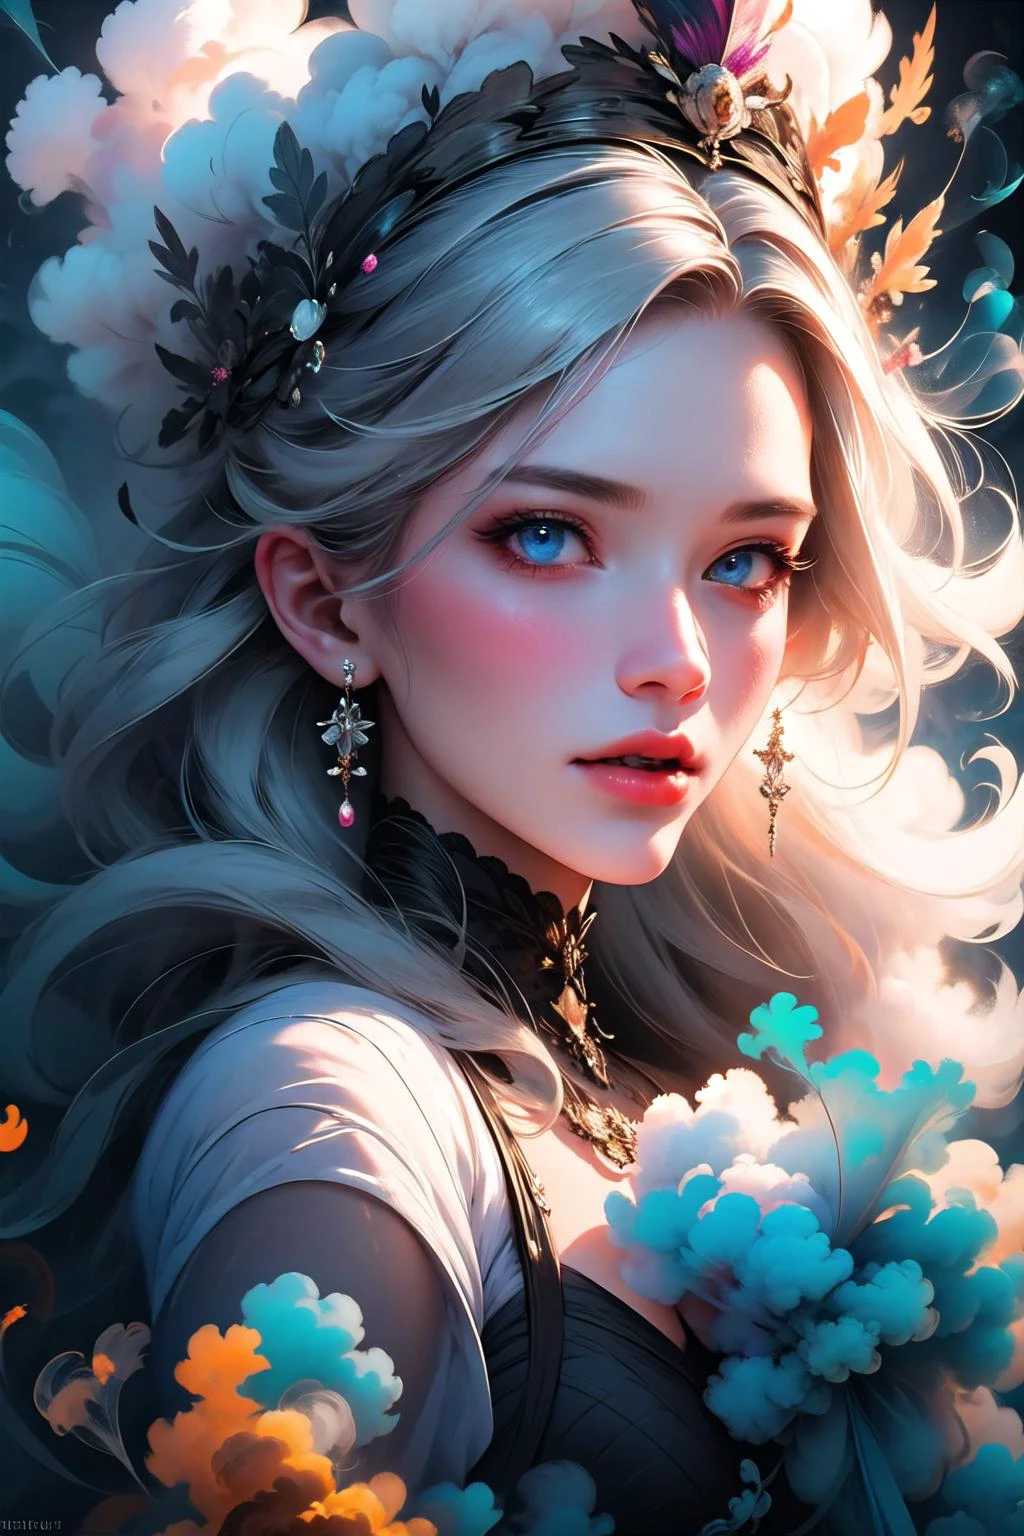 Retrato hiperrealista de una mujer misteriosa con cabello plateado suelto, ojos azules penetrantes, y una delicada corona floral, vistoso_vapores, fumar,